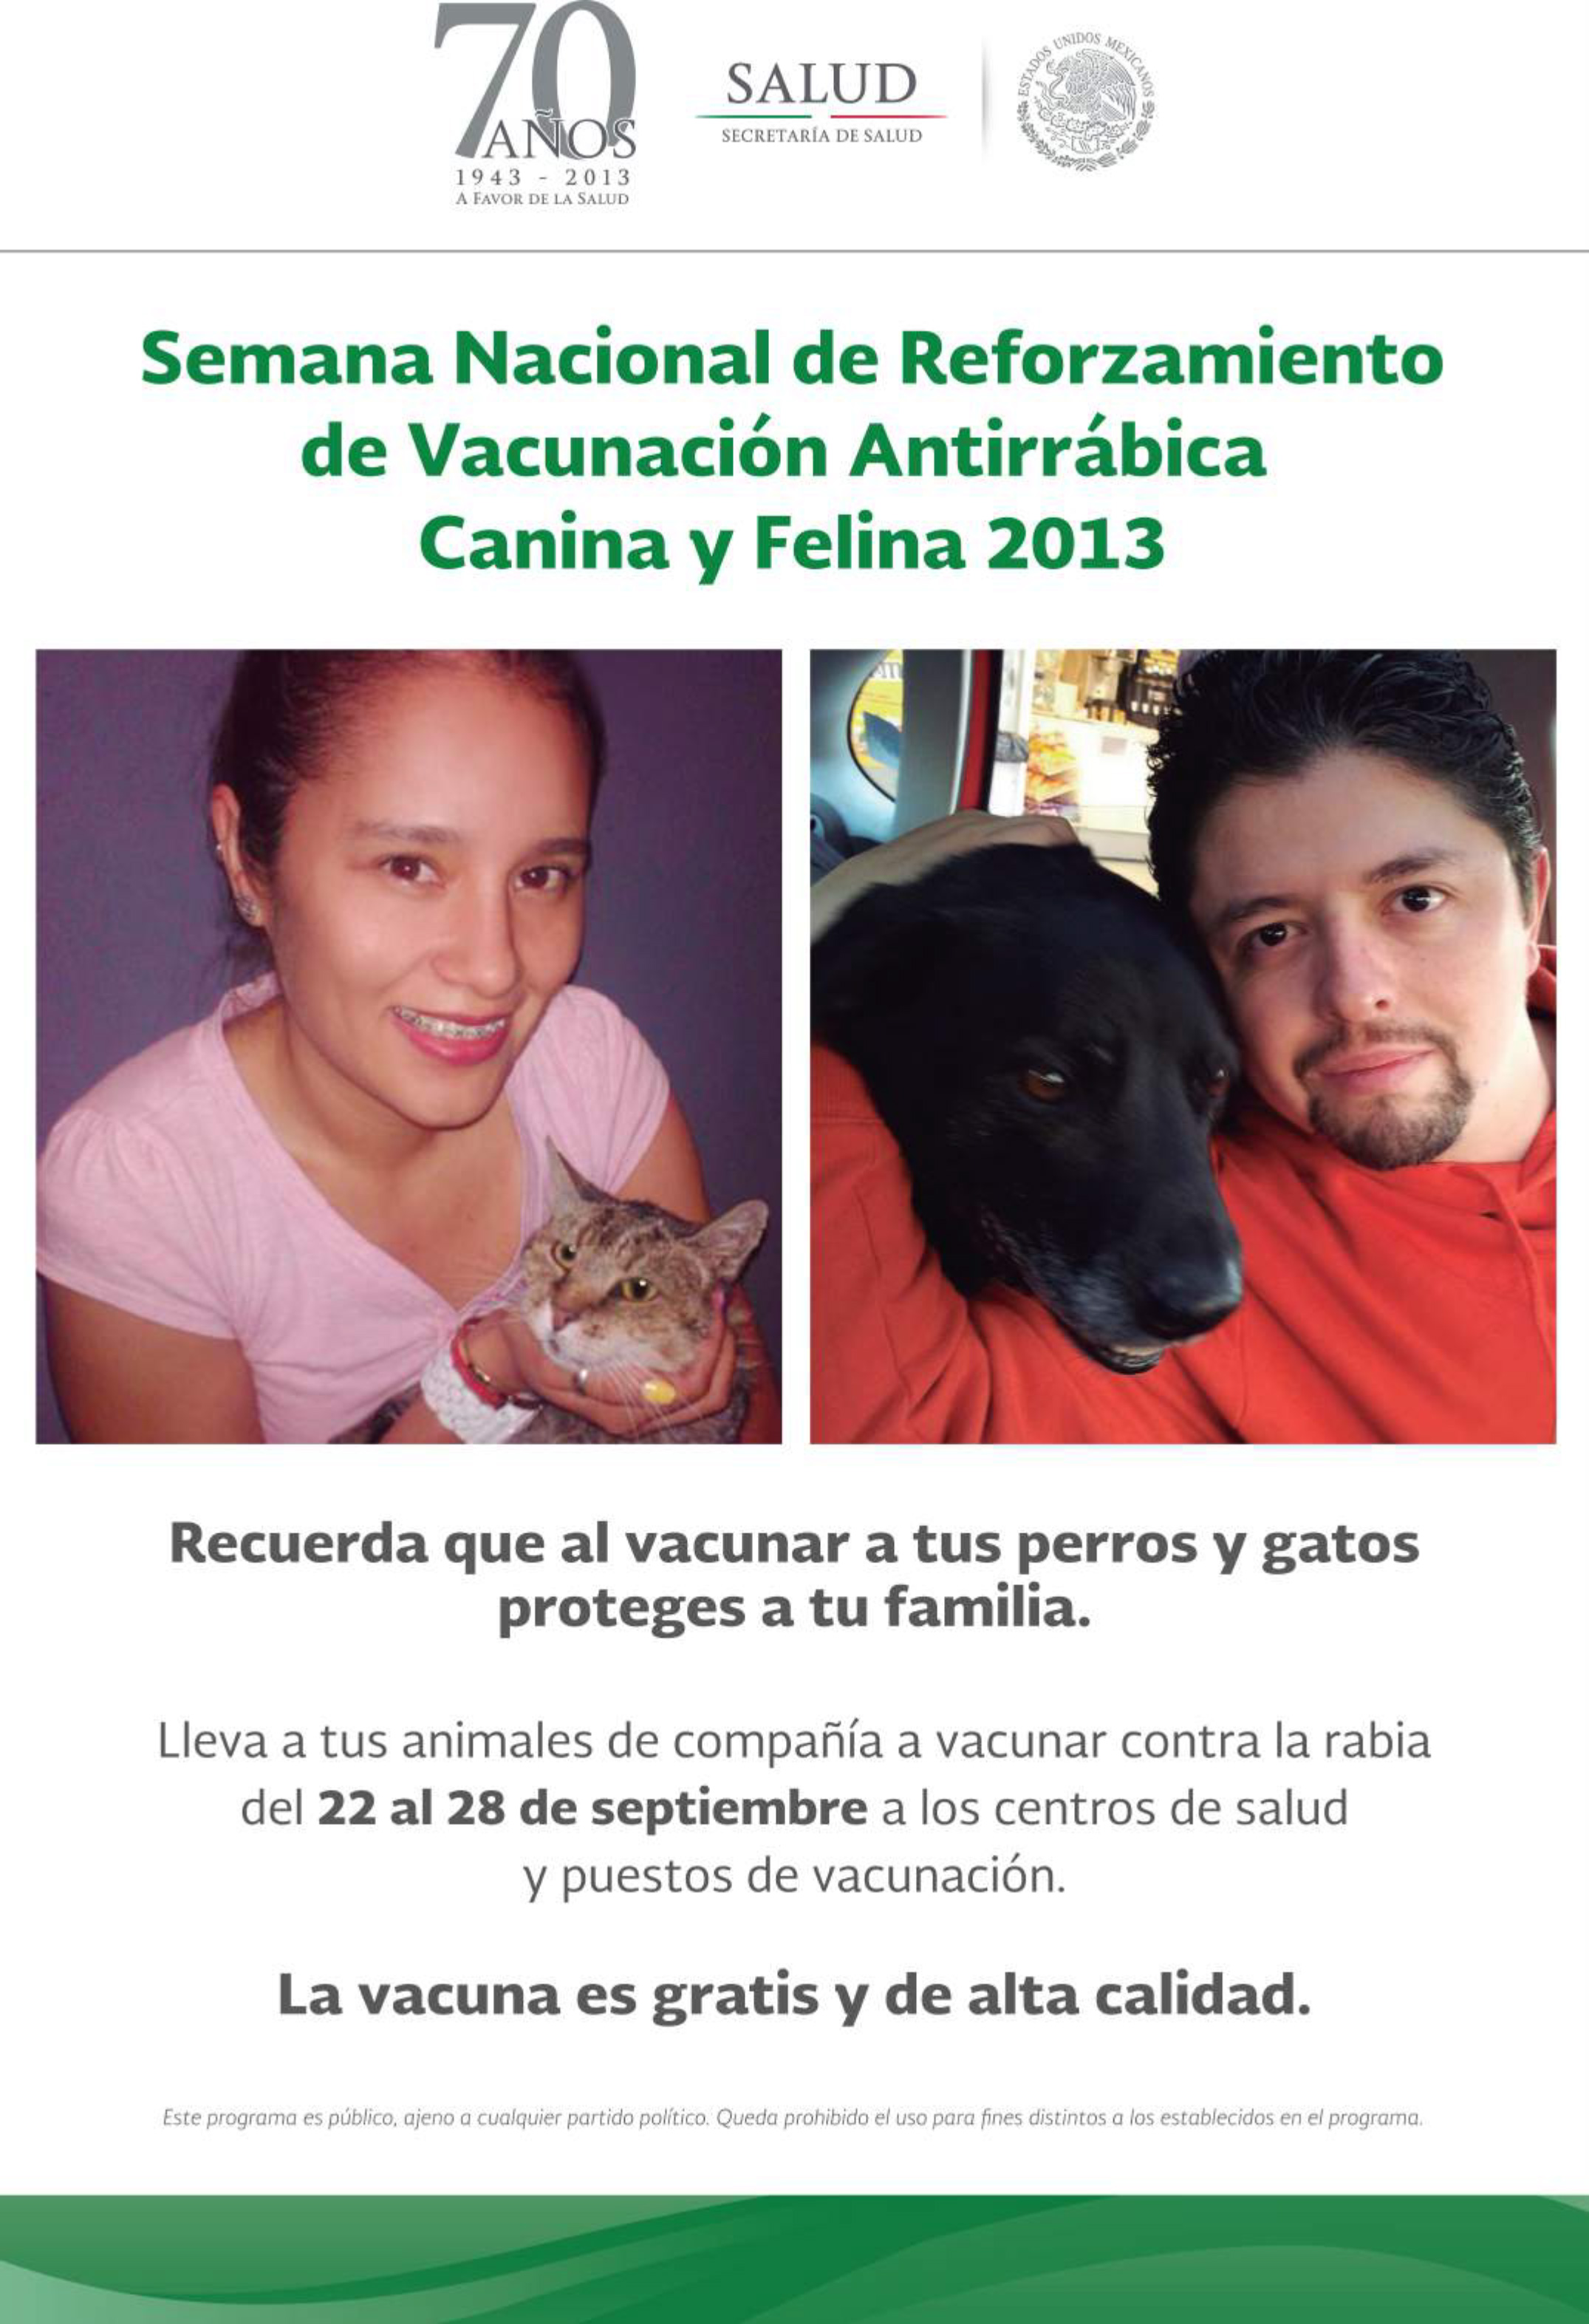 Cartel conmemorativo de la Semana Nacional de Reforzamiento de Vacunación Antirrábica Canina y Felina 2013